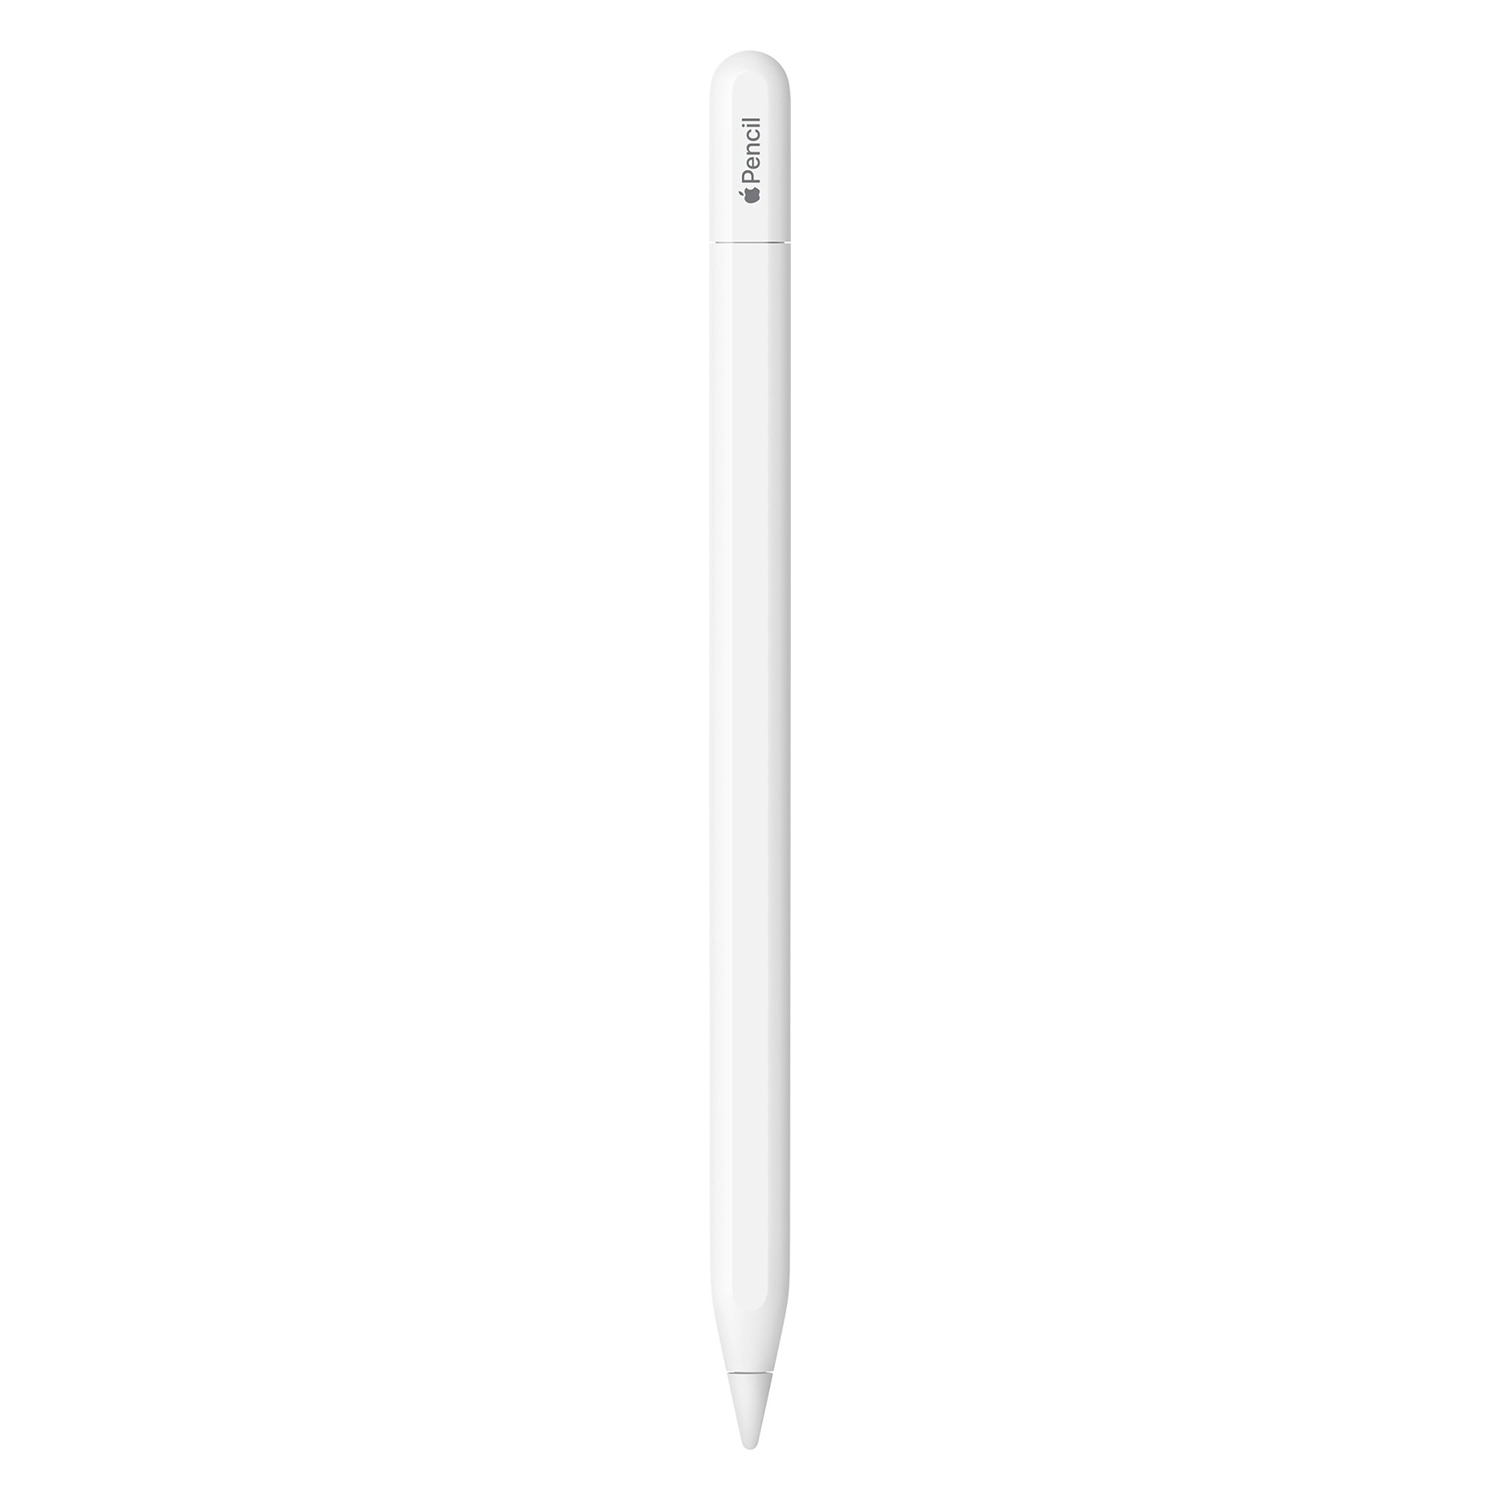 Apple Pencil MUWA3AM/A USB-C para iPad - Branco